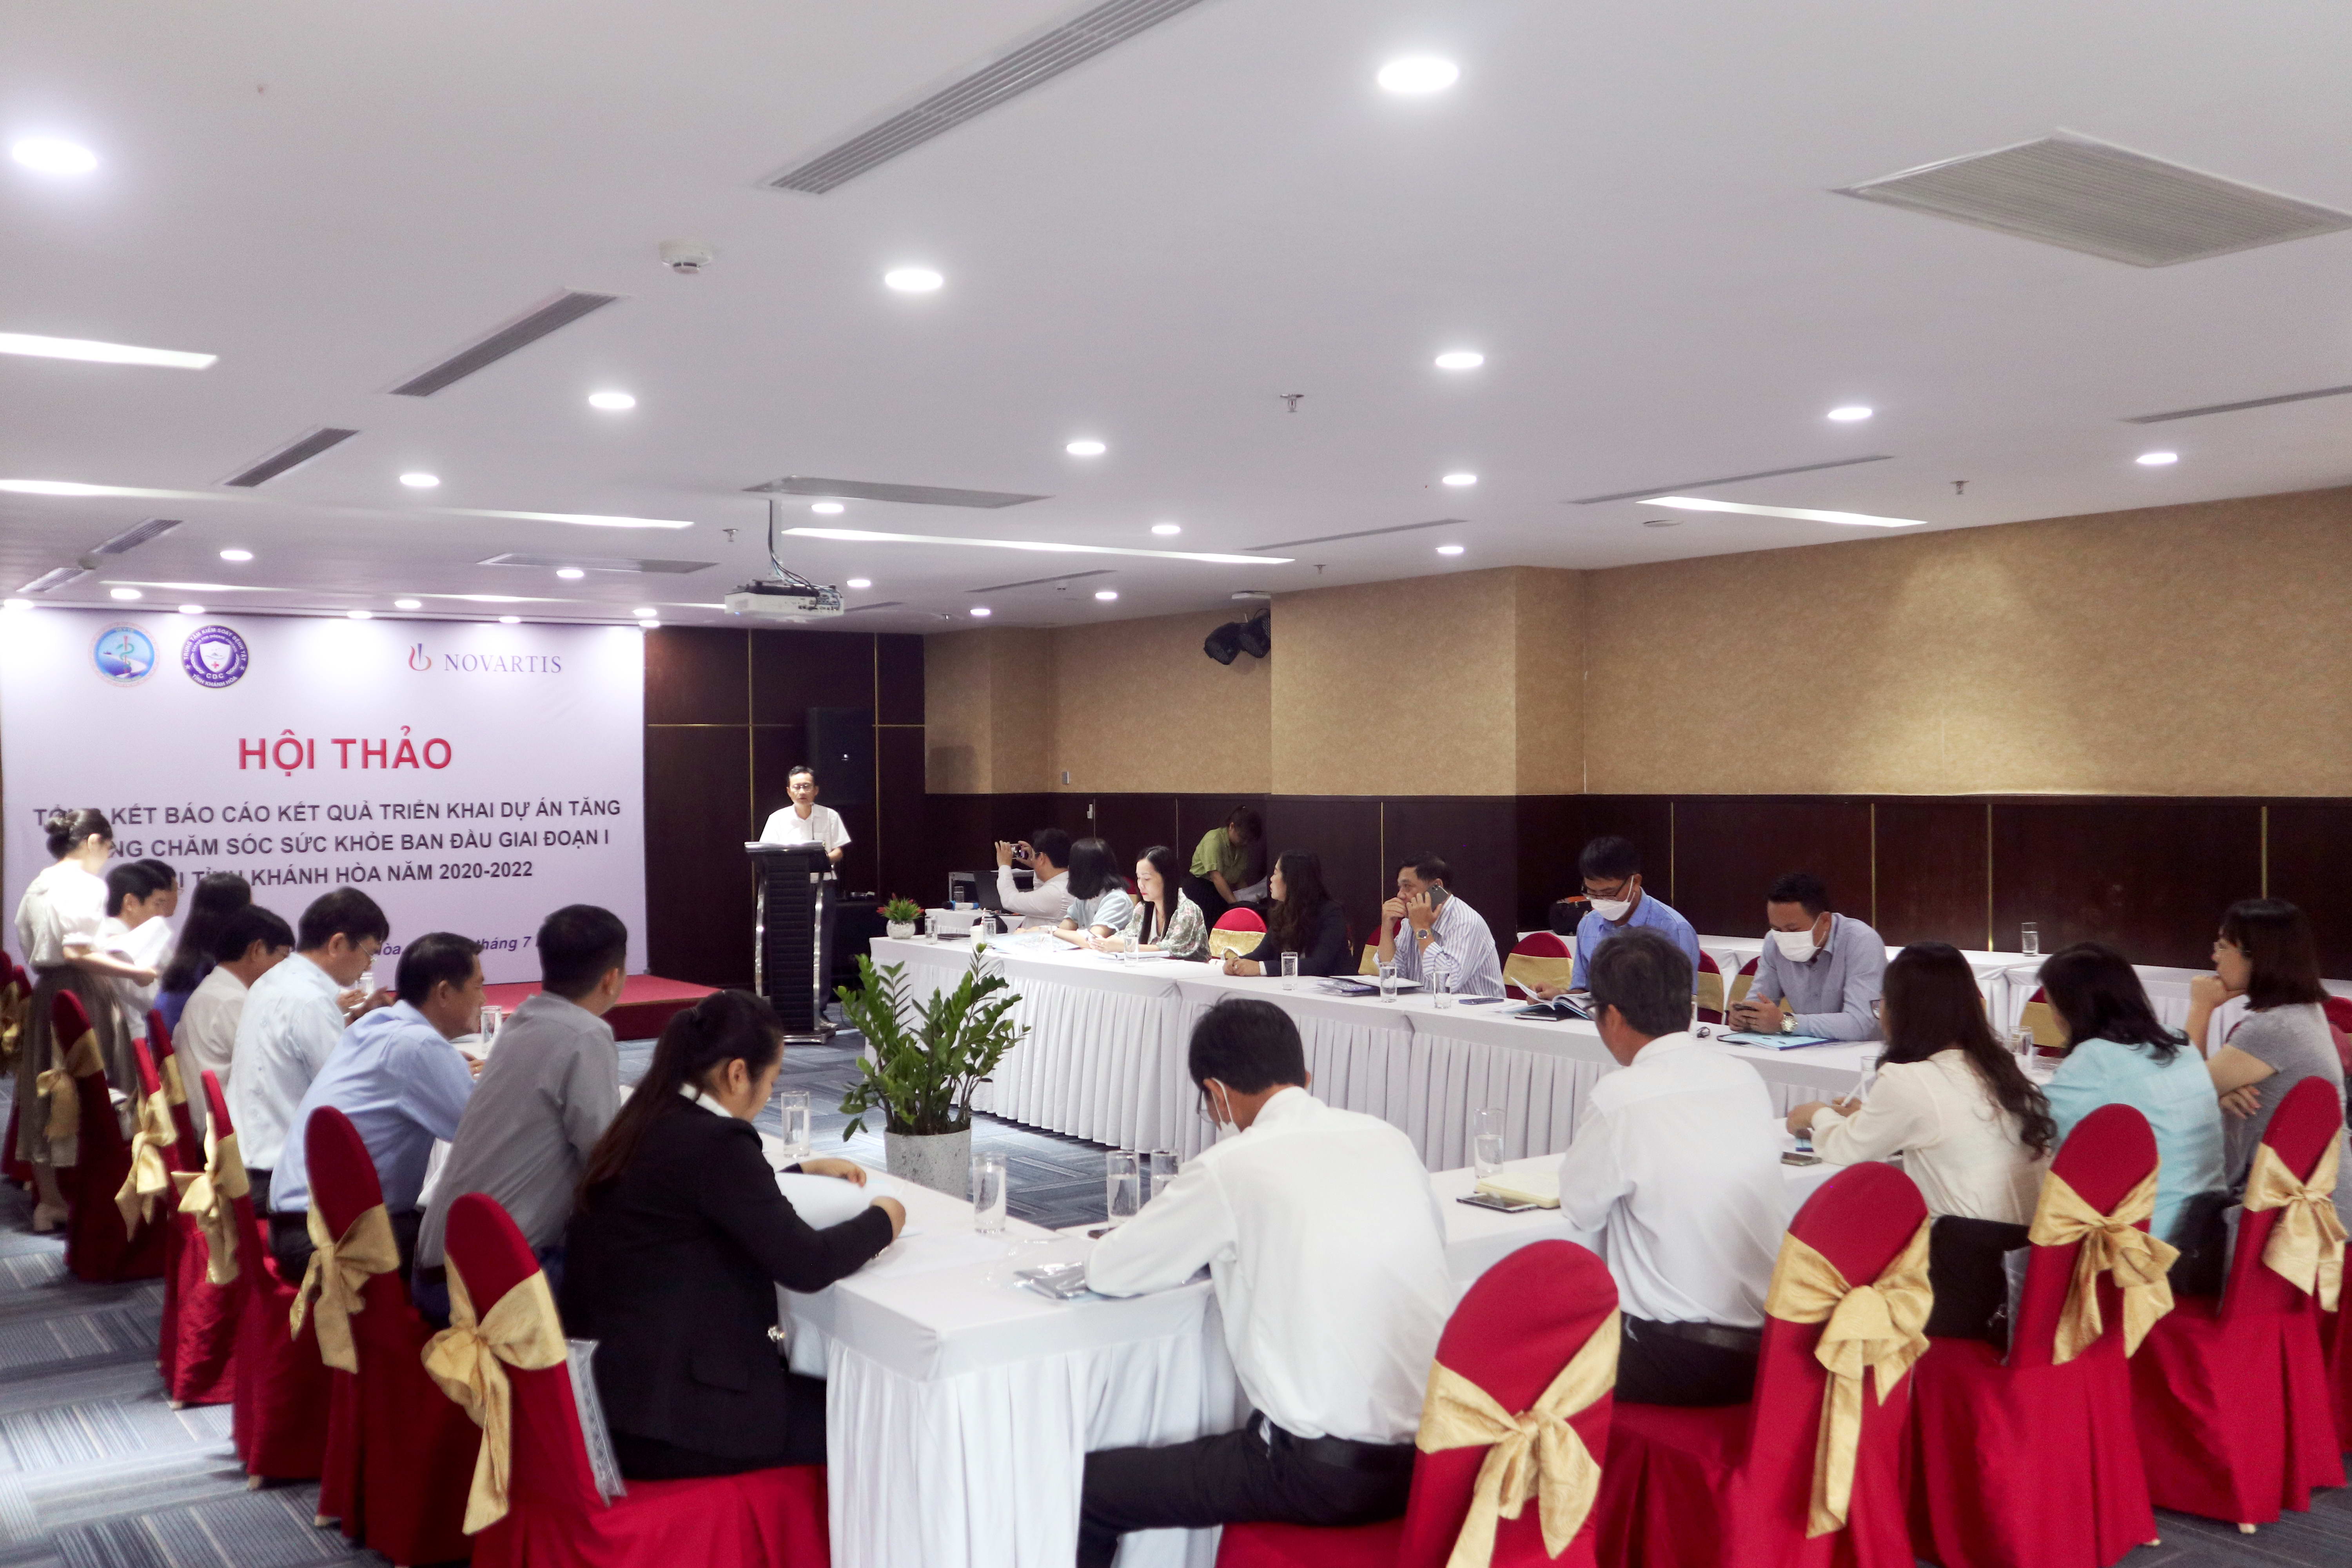 Hội thảo tổng kết dự án Tăng cường chăm sóc sức khỏe ban đầu tại tỉnh Khánh Hòa giai đoạn I, năm 2020-2022